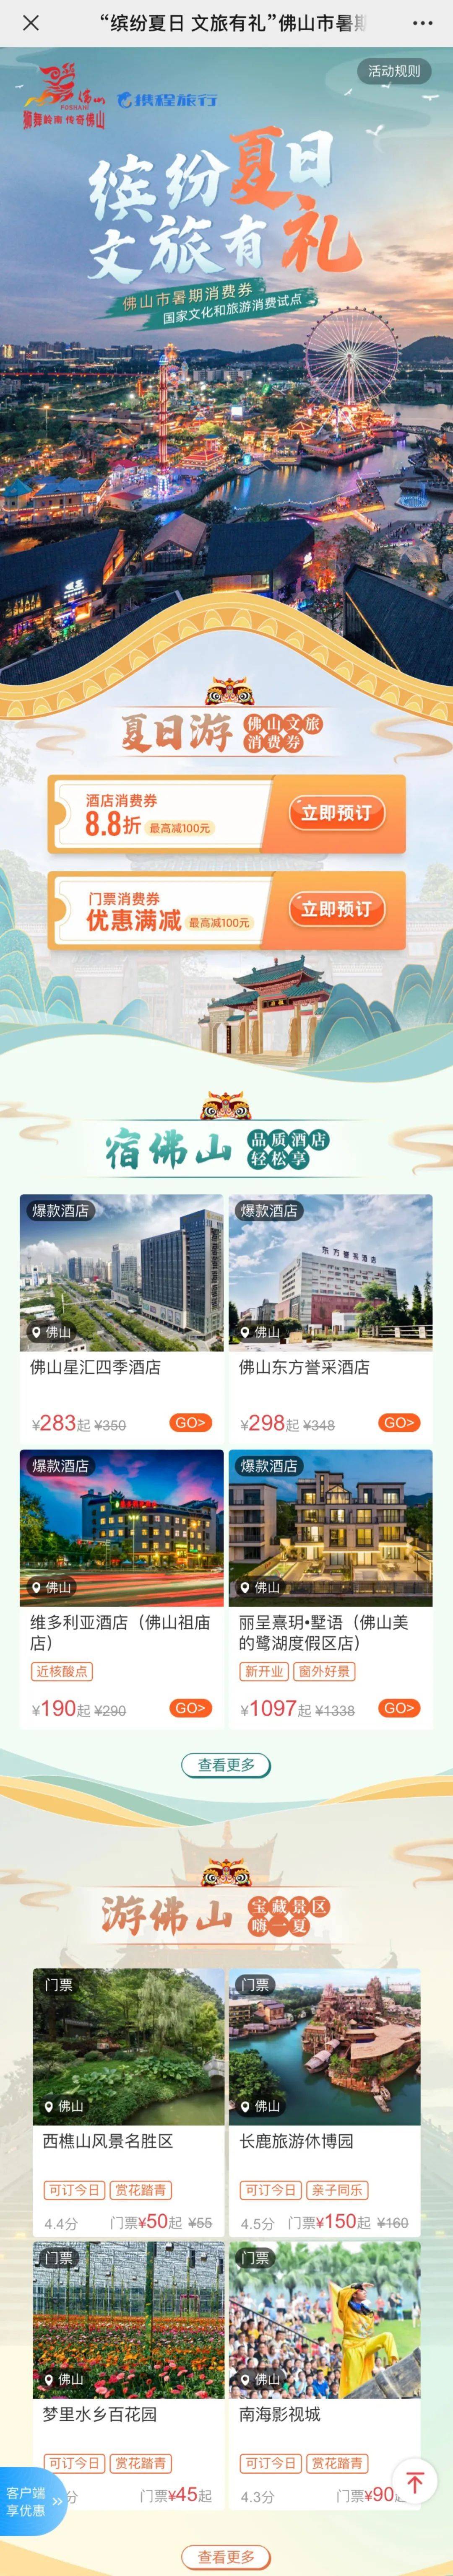 2022温州瑞安百万元文旅消费券合作商家名单一览- 温州本地宝